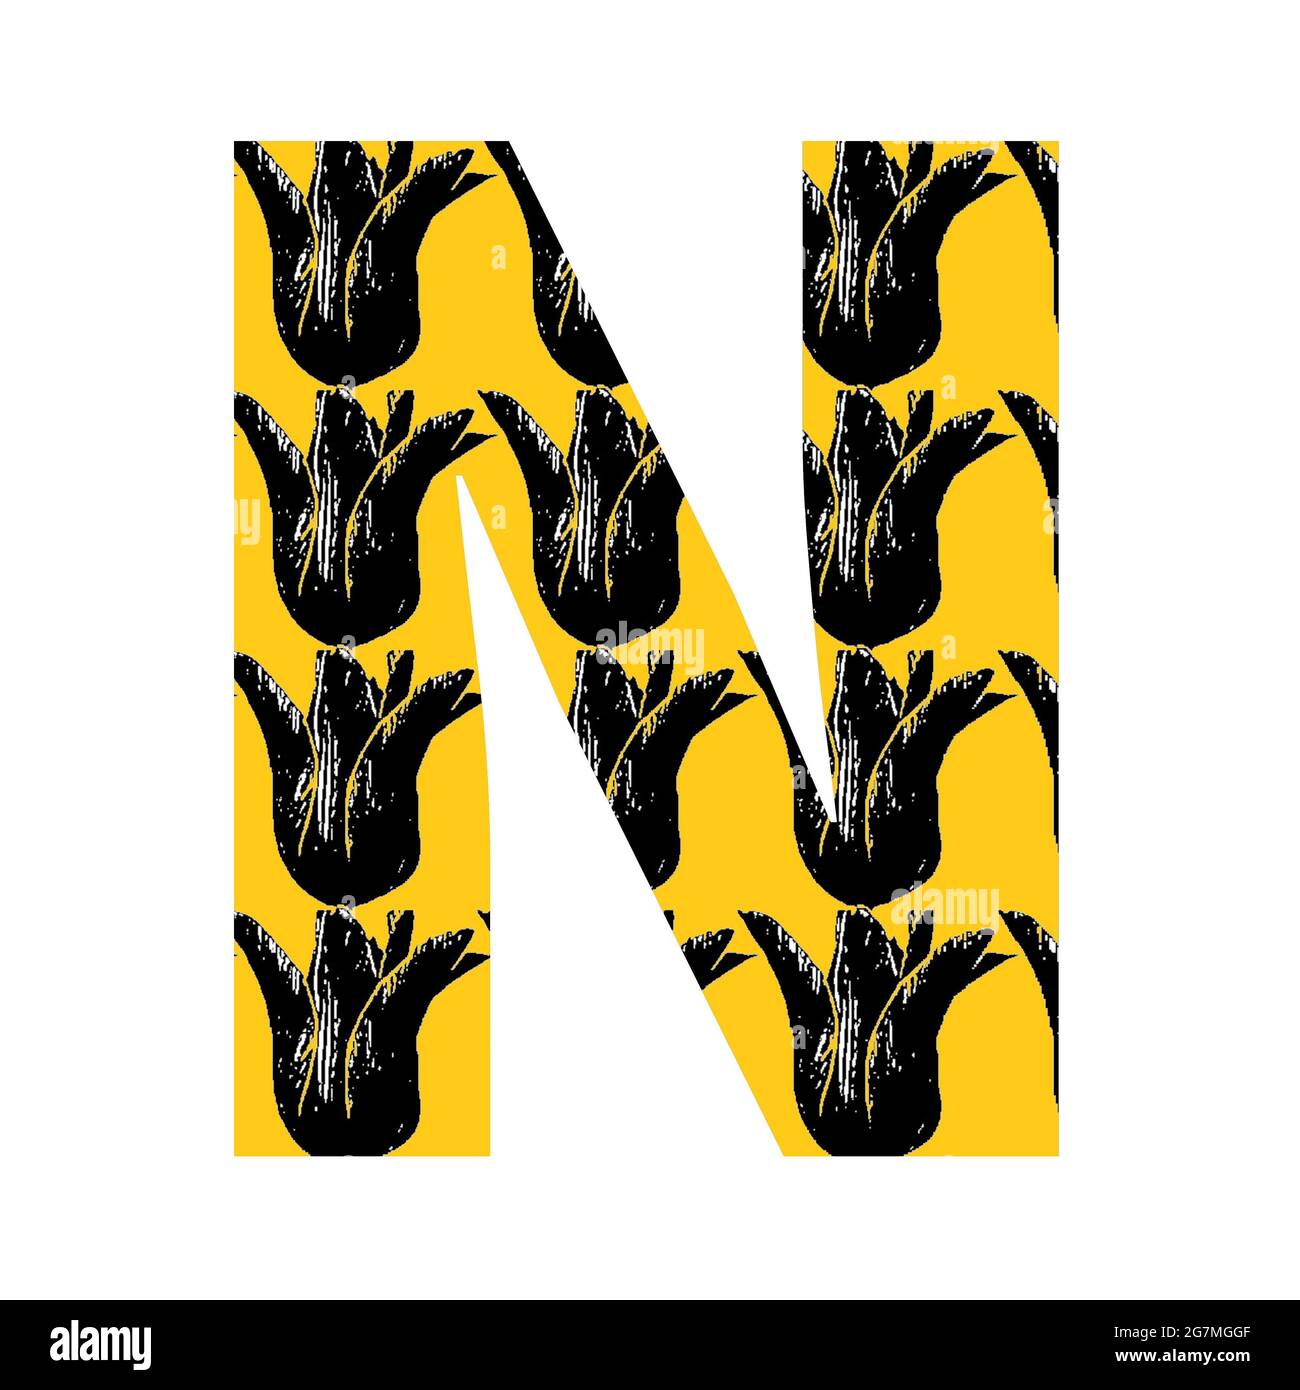 Letra N del alfabeto hecha con un patrón de tulipán negro sobre fondo amarillo, aislada sobre fondo blanco Foto de stock